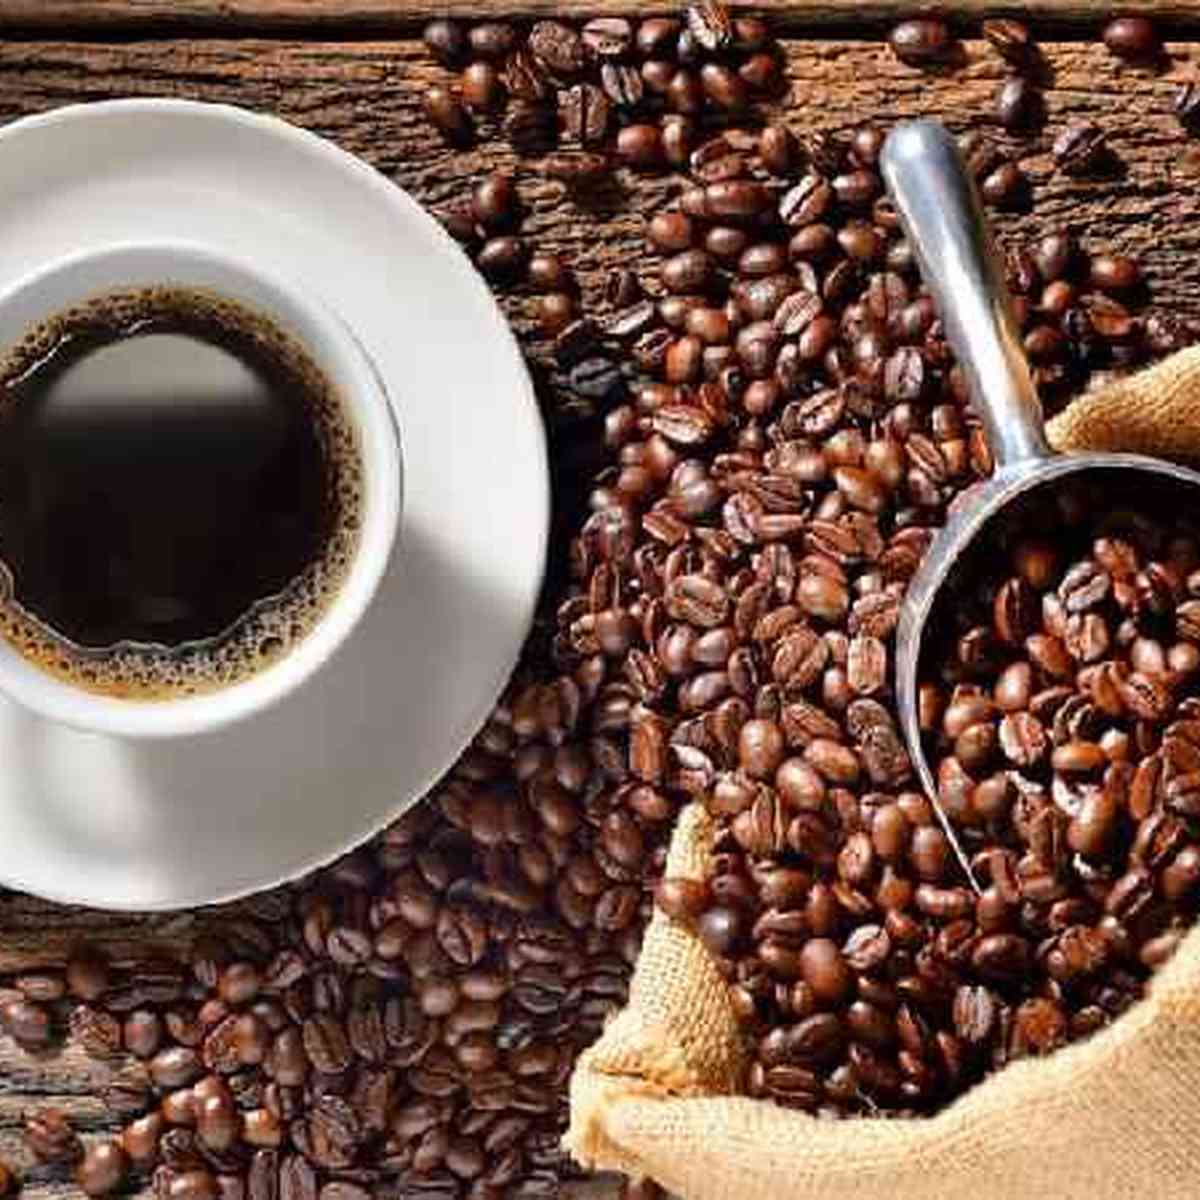 Conheça algumas diferenças dos principais cafés que consumimos